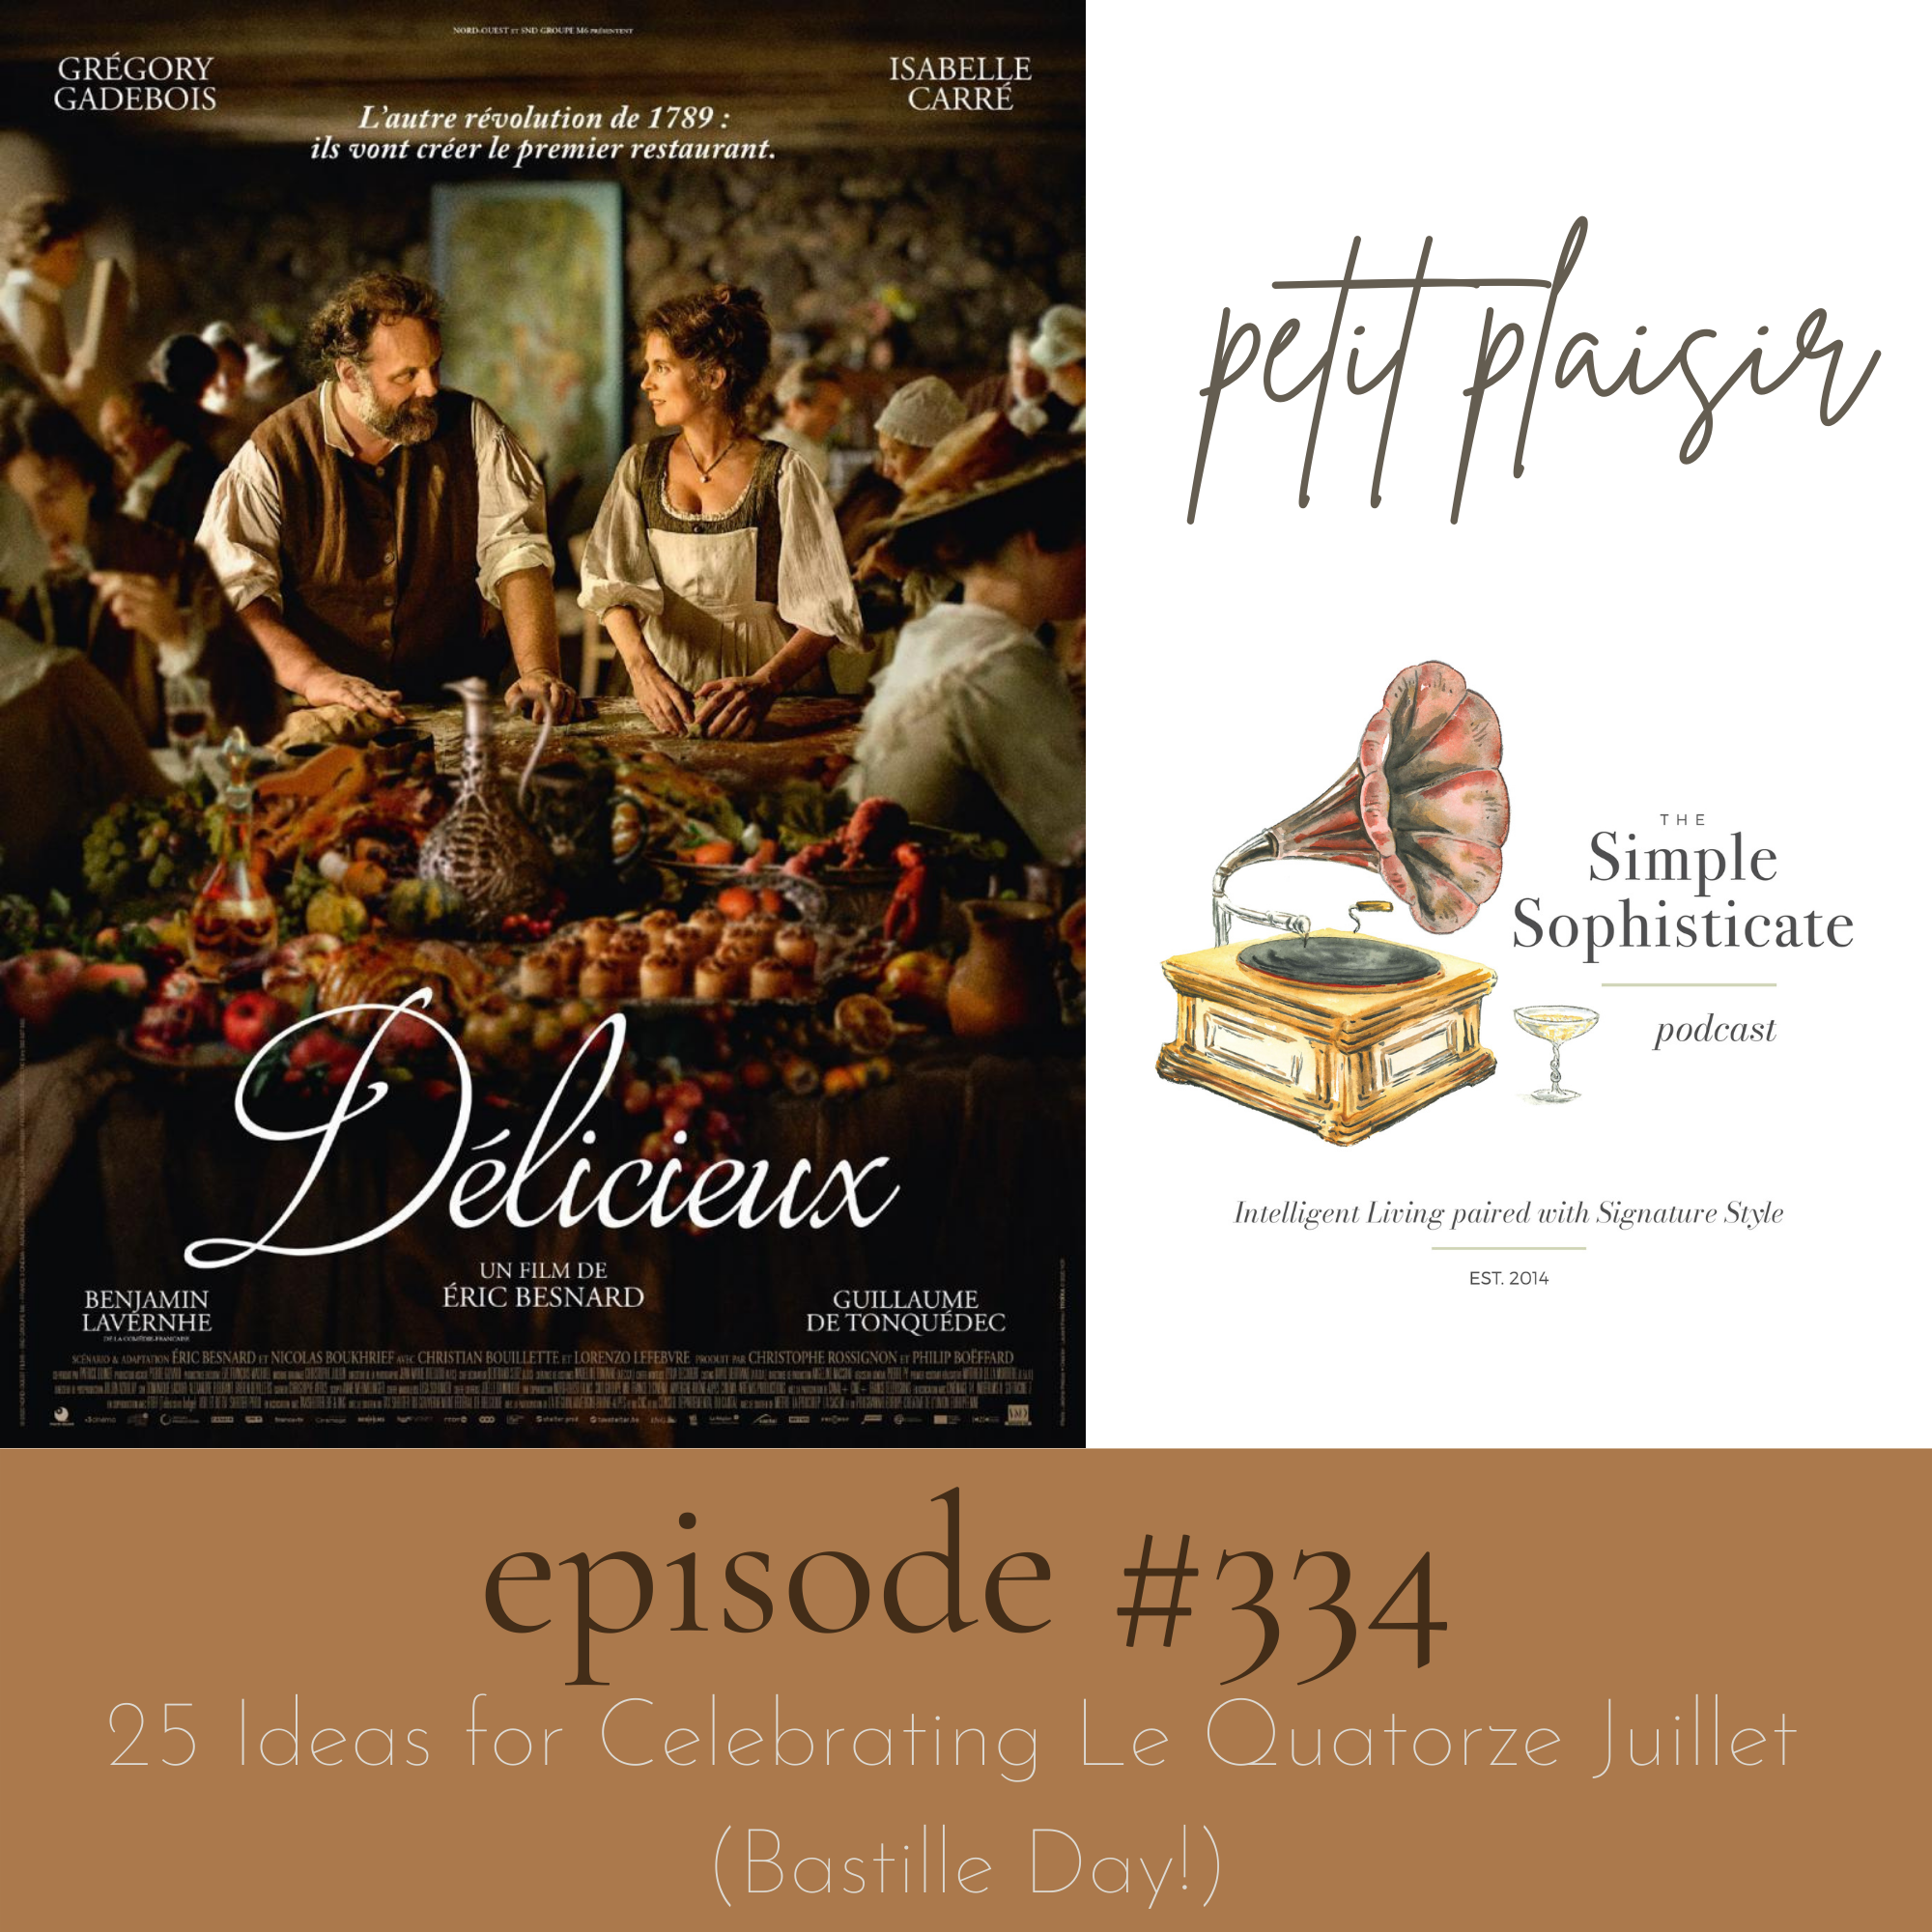 Délicieux, the film: petit plaisir #334